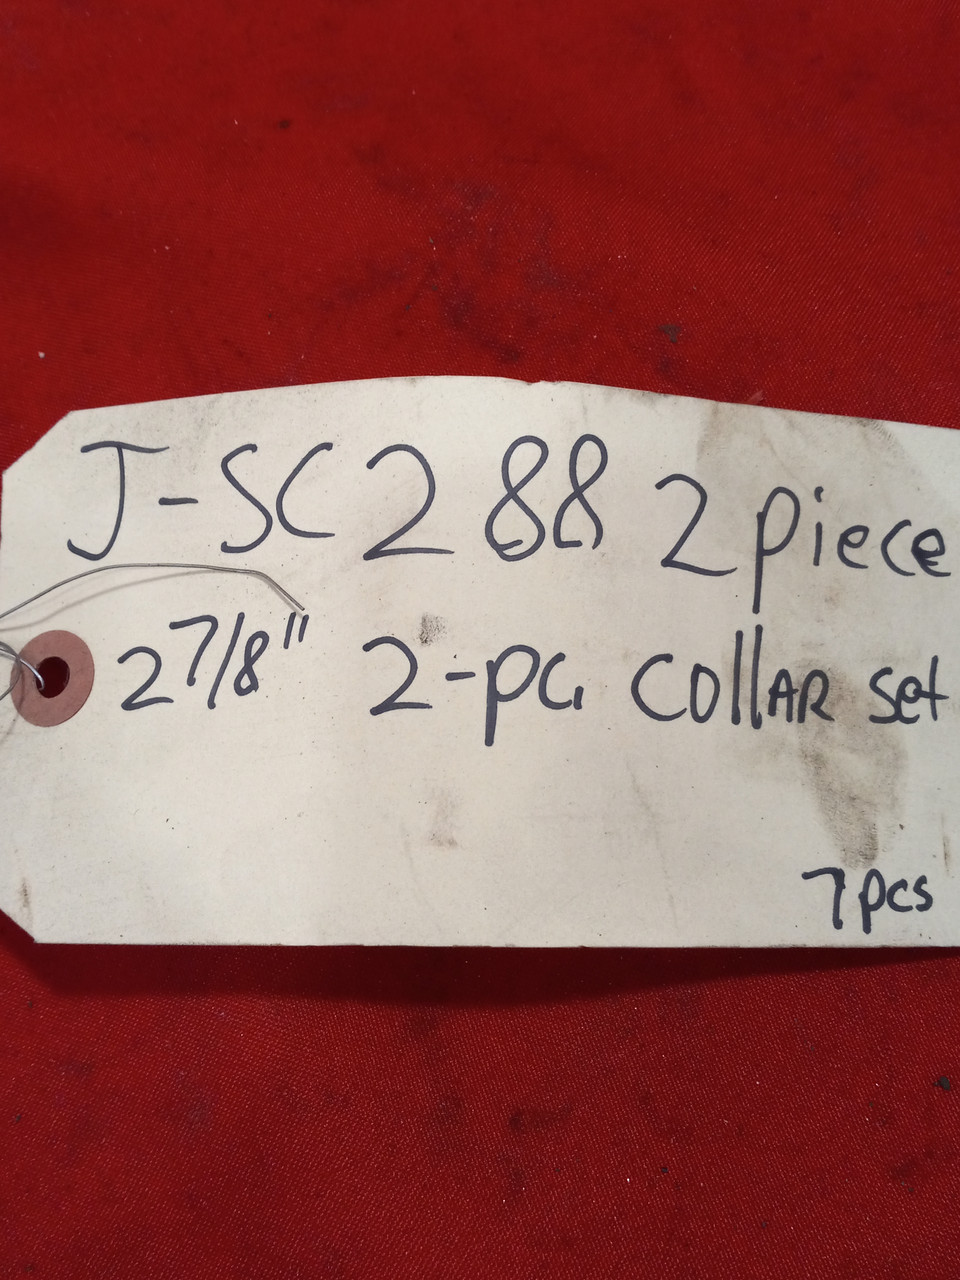 Climax Metal 2-7/8" Clamp Collar J-SC288